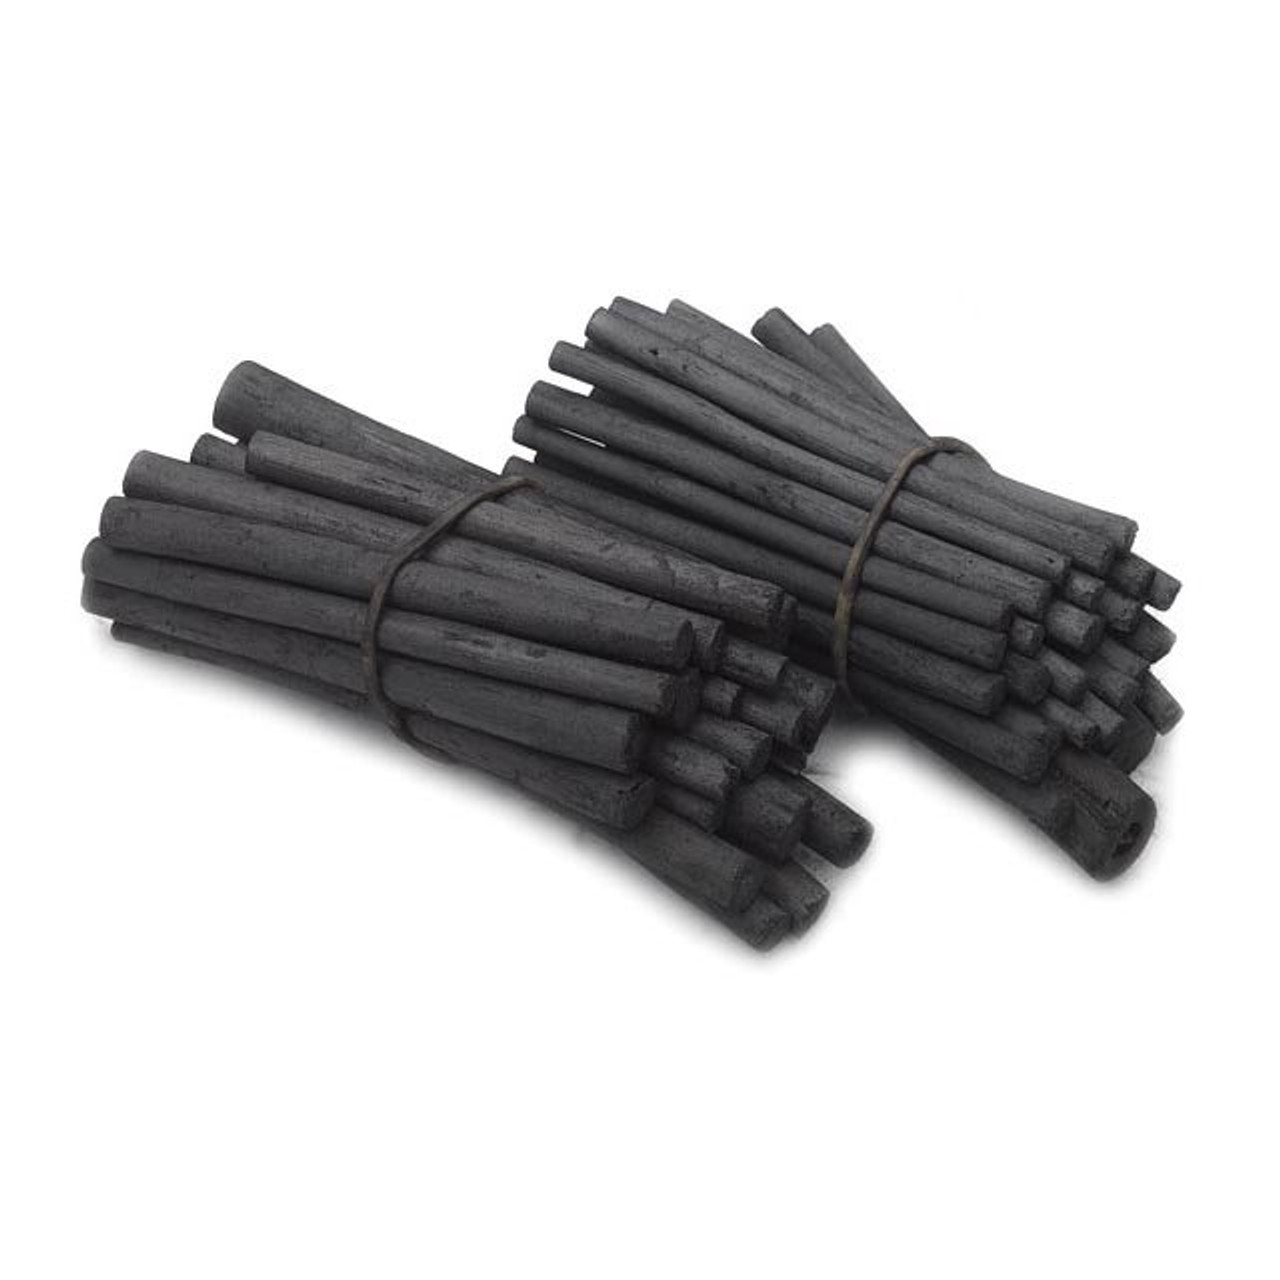 Winsor & Newton Artists' Willow Charcoal Sticks, Assorted Short Sticks